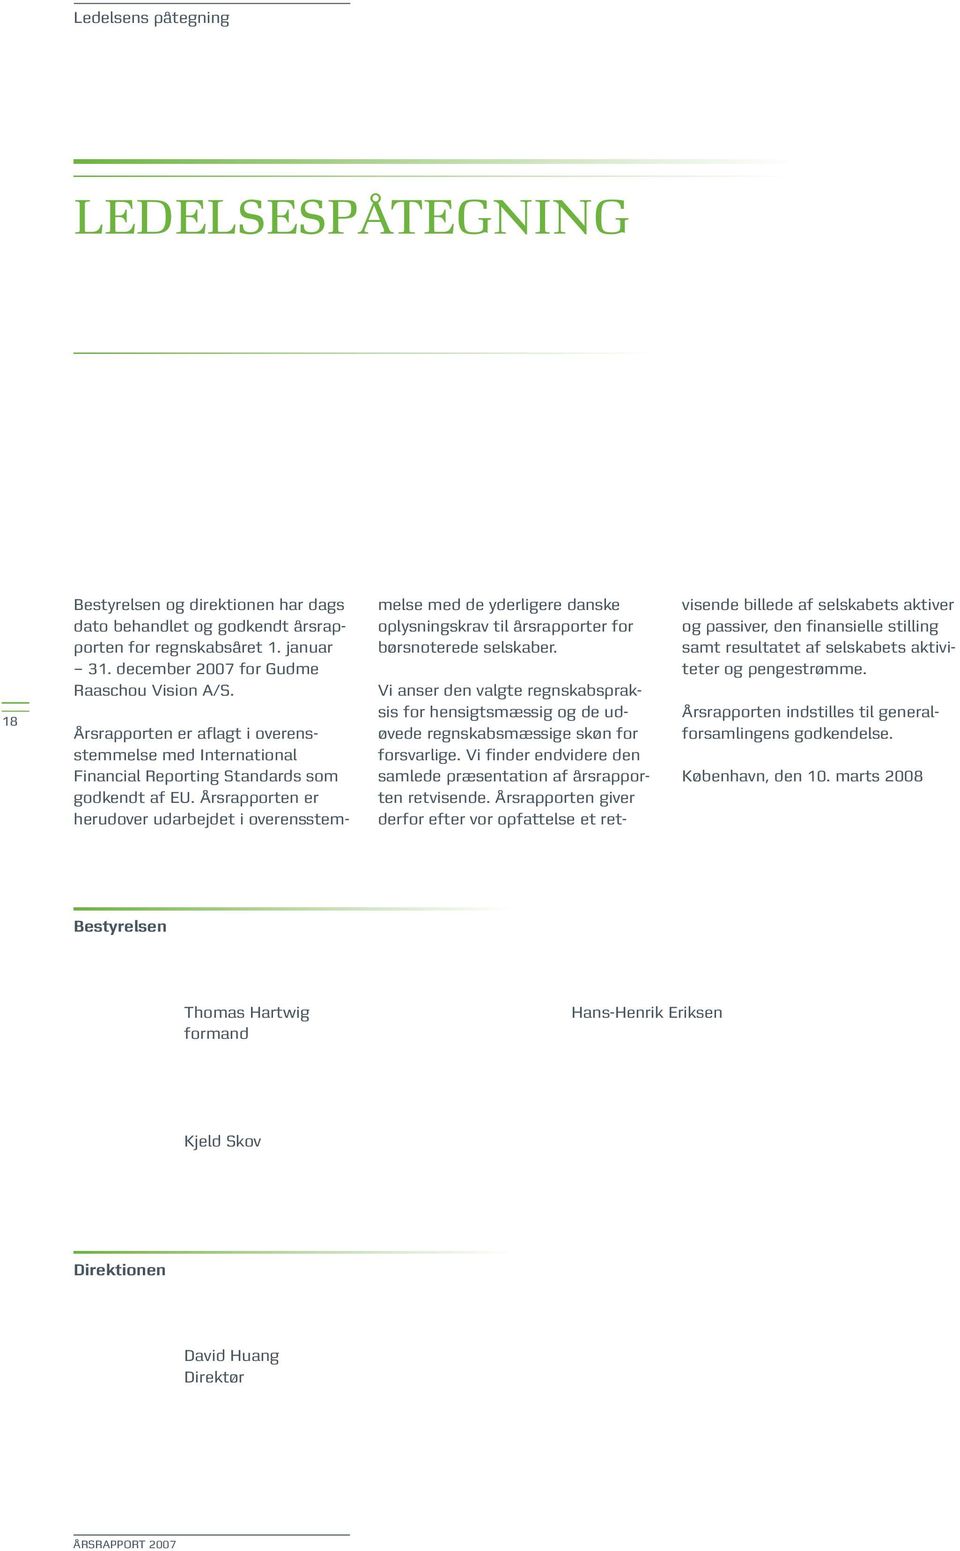 Årsrapporten er herudover udarbejdet i overensstemmelse med de yderligere danske oplysningskrav til årsrapporter for børsnoterede selskaber.